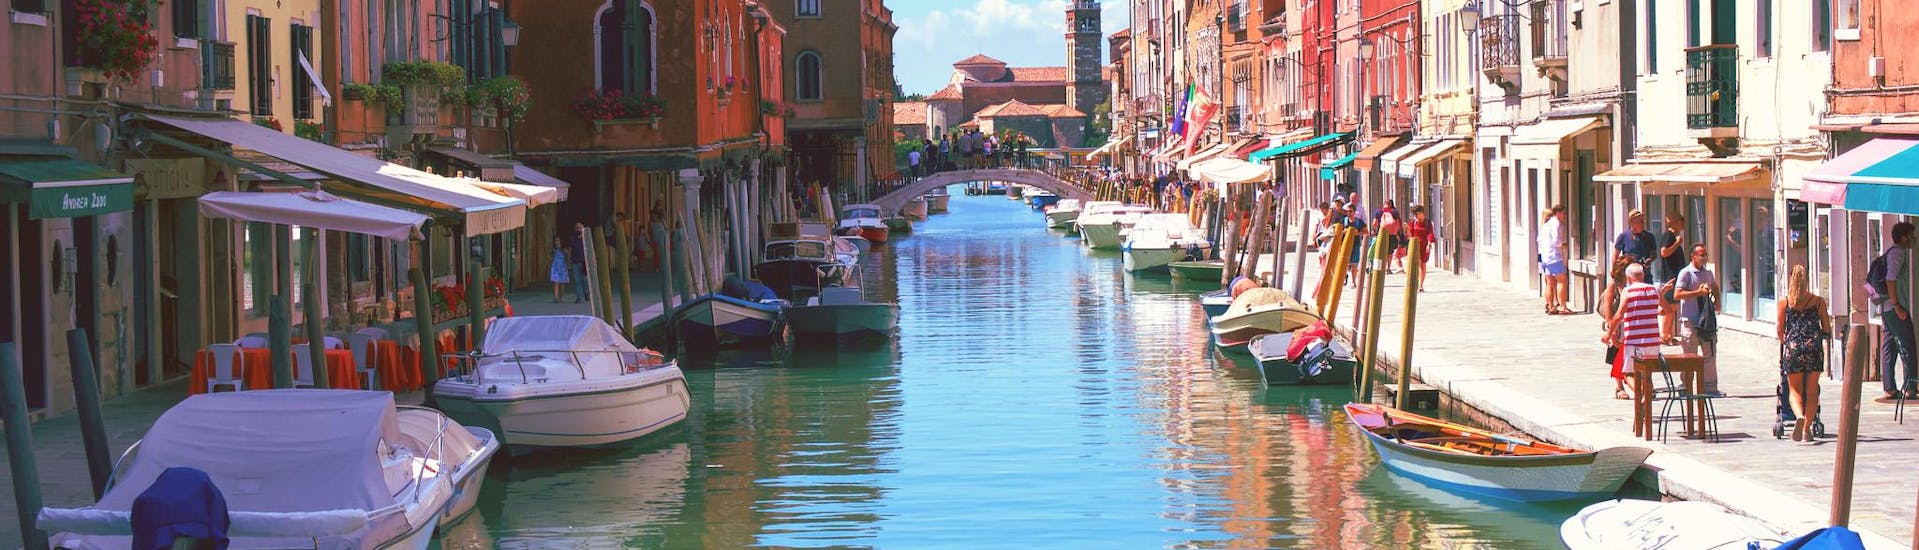 Bateaux dans le canal de Murano lors d'une balade en bateau à Murano.